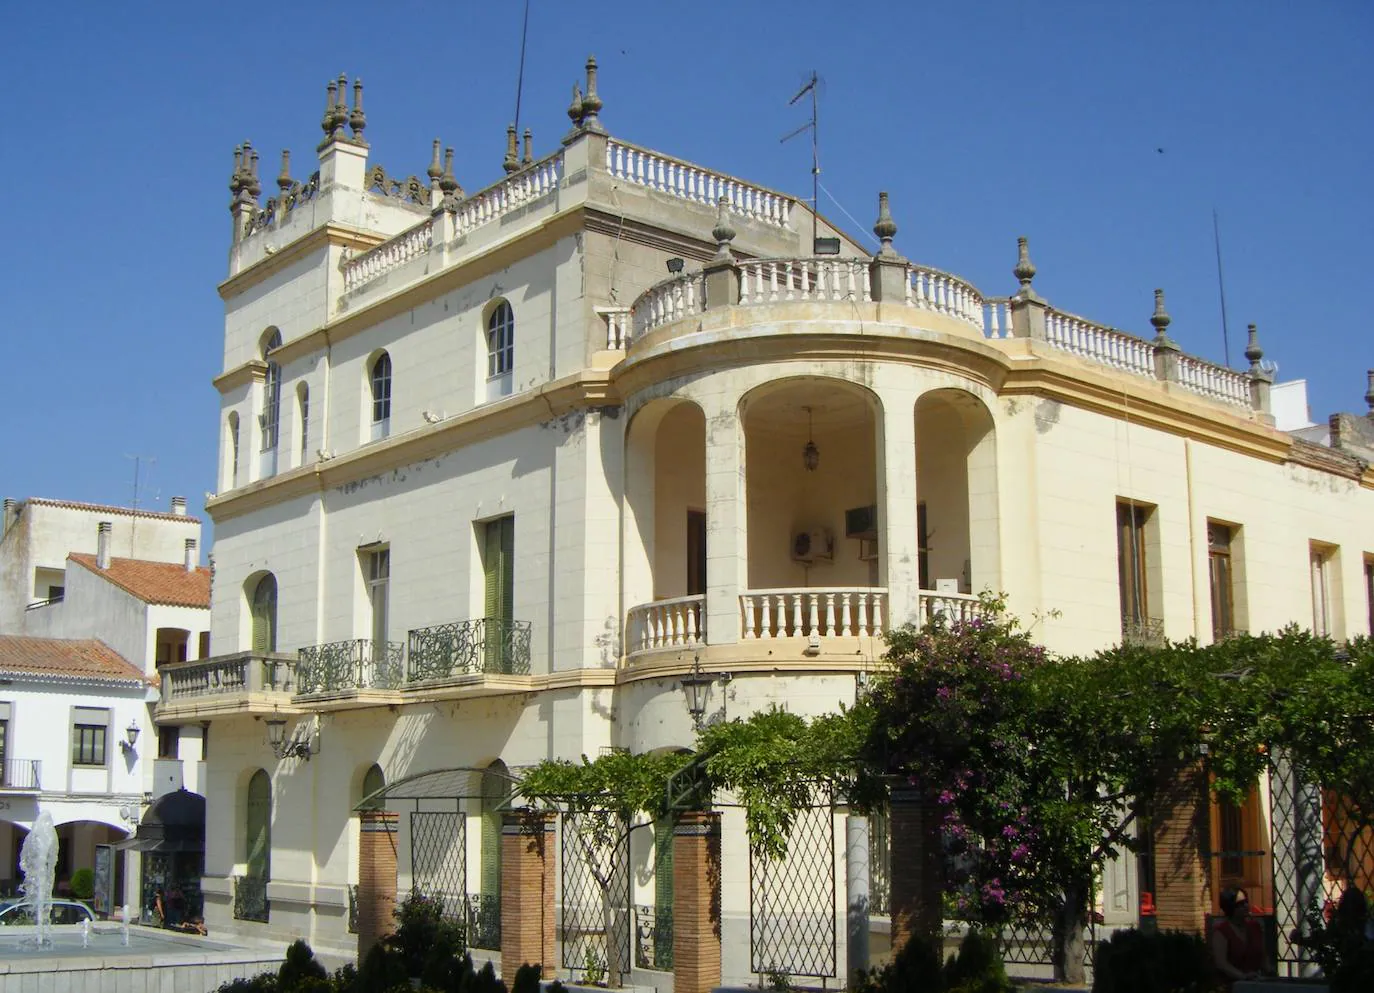 La comunidad de propietarios de la Casa-Palacio de los Condes de Ayala celebrará el sábado 9 de julio Asamblea General Extraordinaria